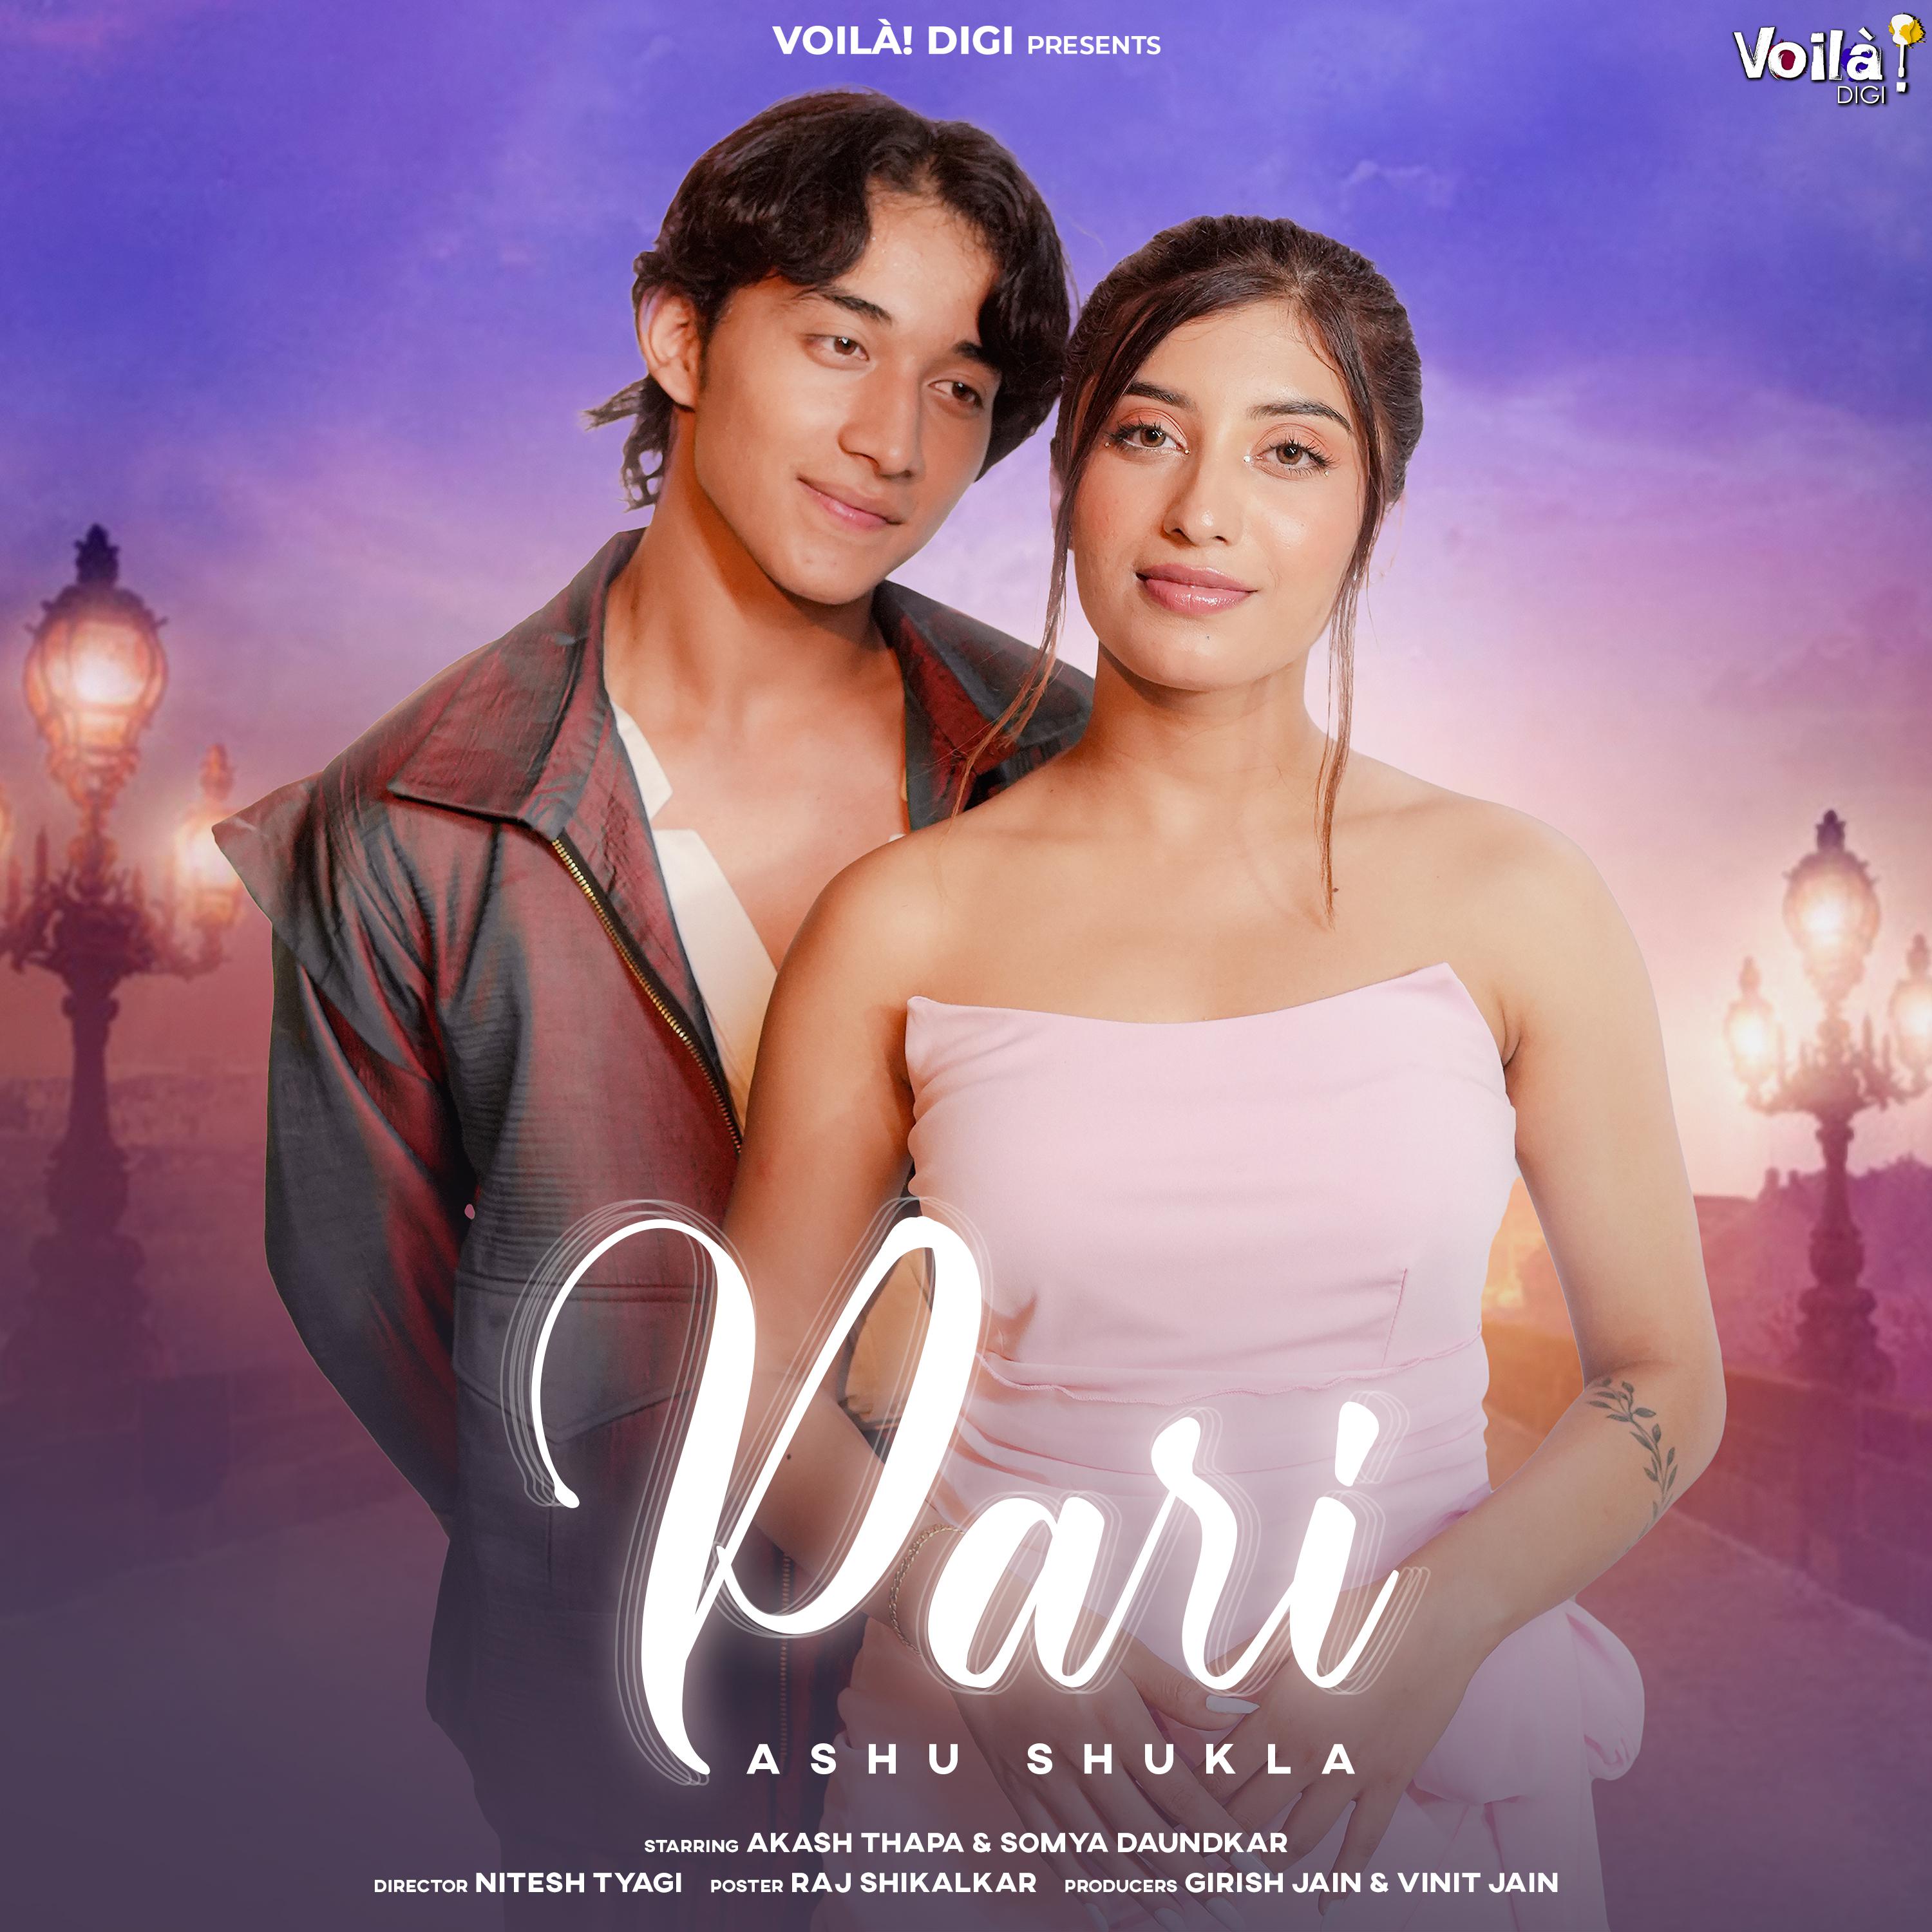 Постер альбома Pari